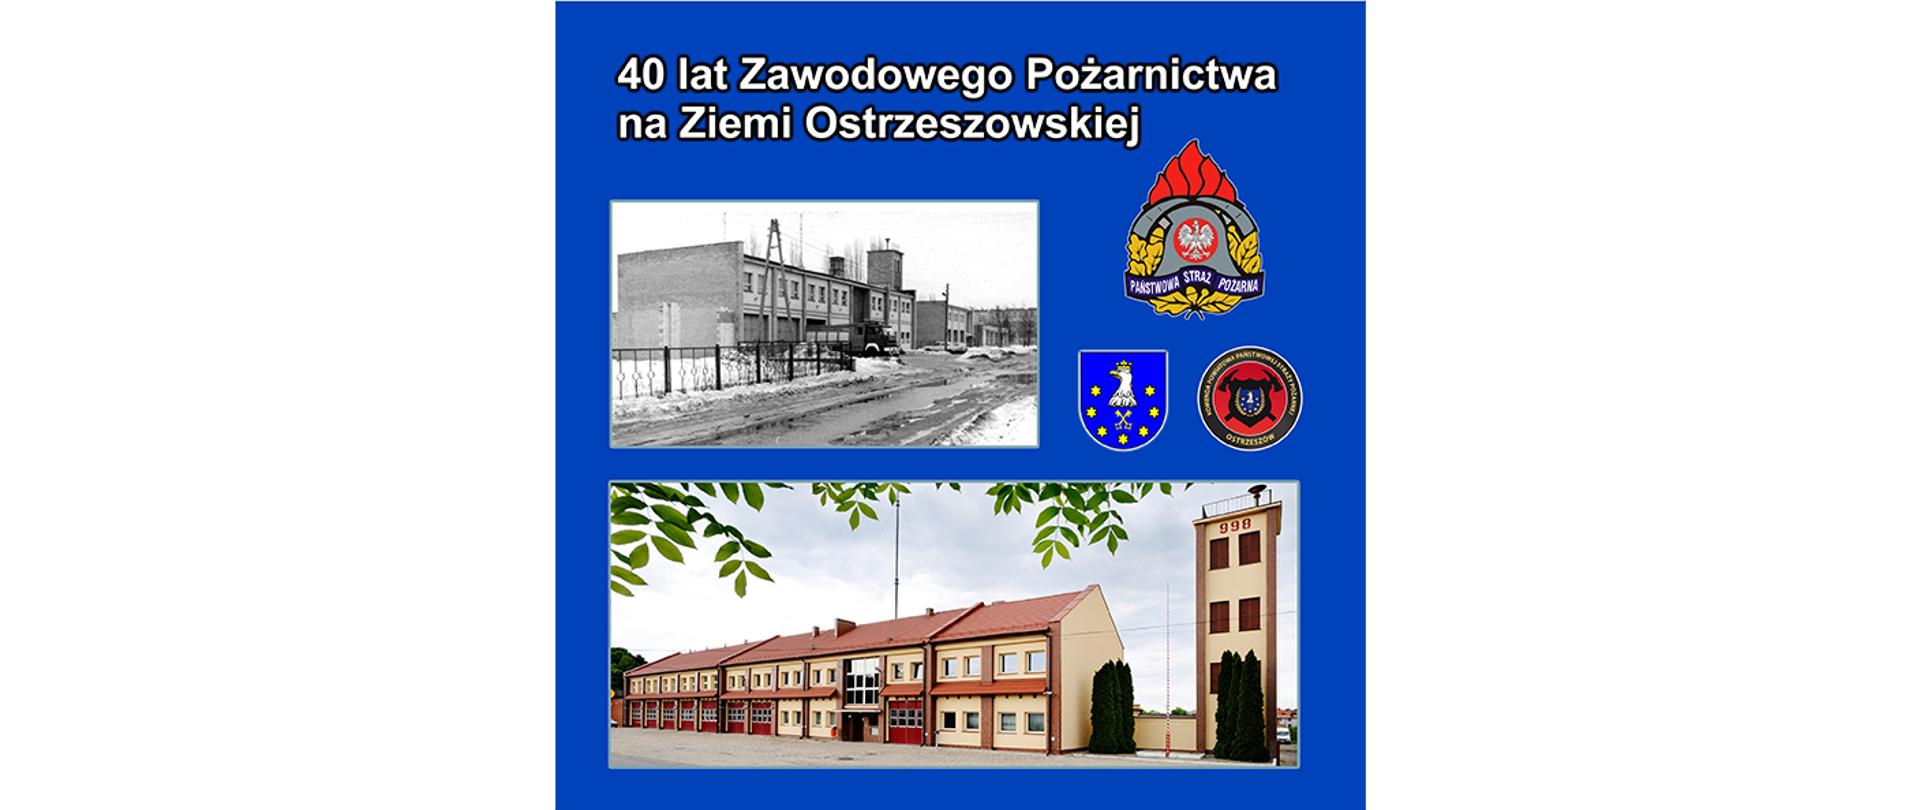 Strona tytułowa broszury "40 lat Ziemi Pożarnictwa na Ziemi Ostrzeszowskiej"